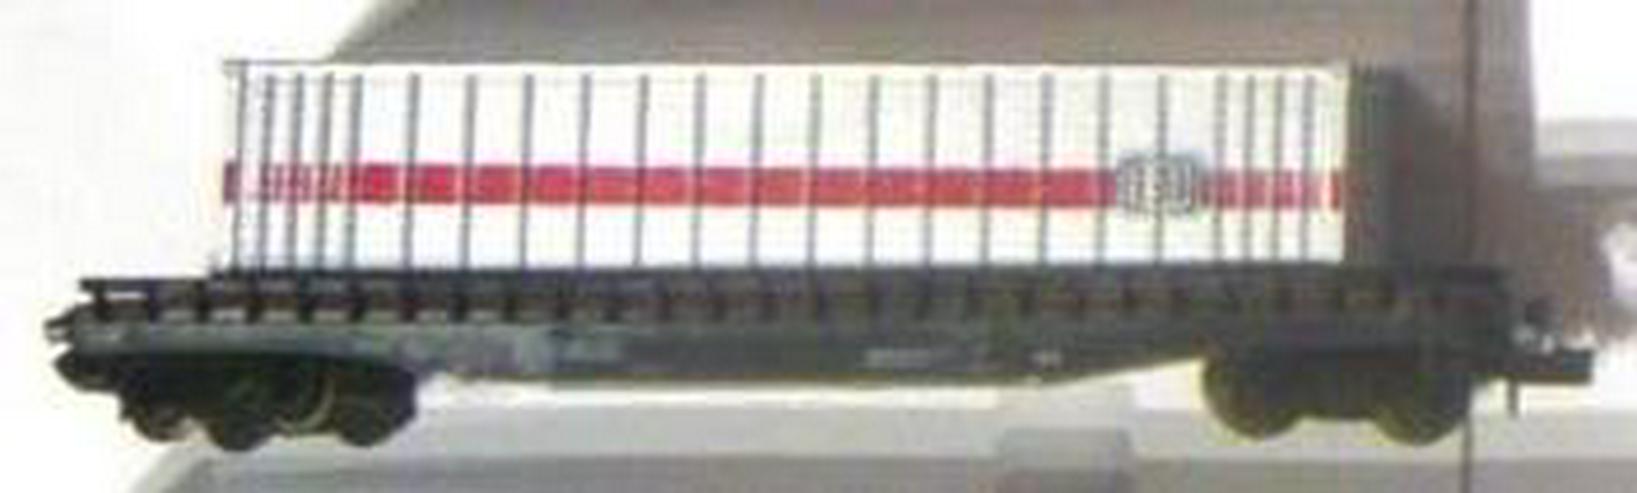 Bild 6: Roco Trix N Güterzug Set 5 Wagen in Verpackung GUT